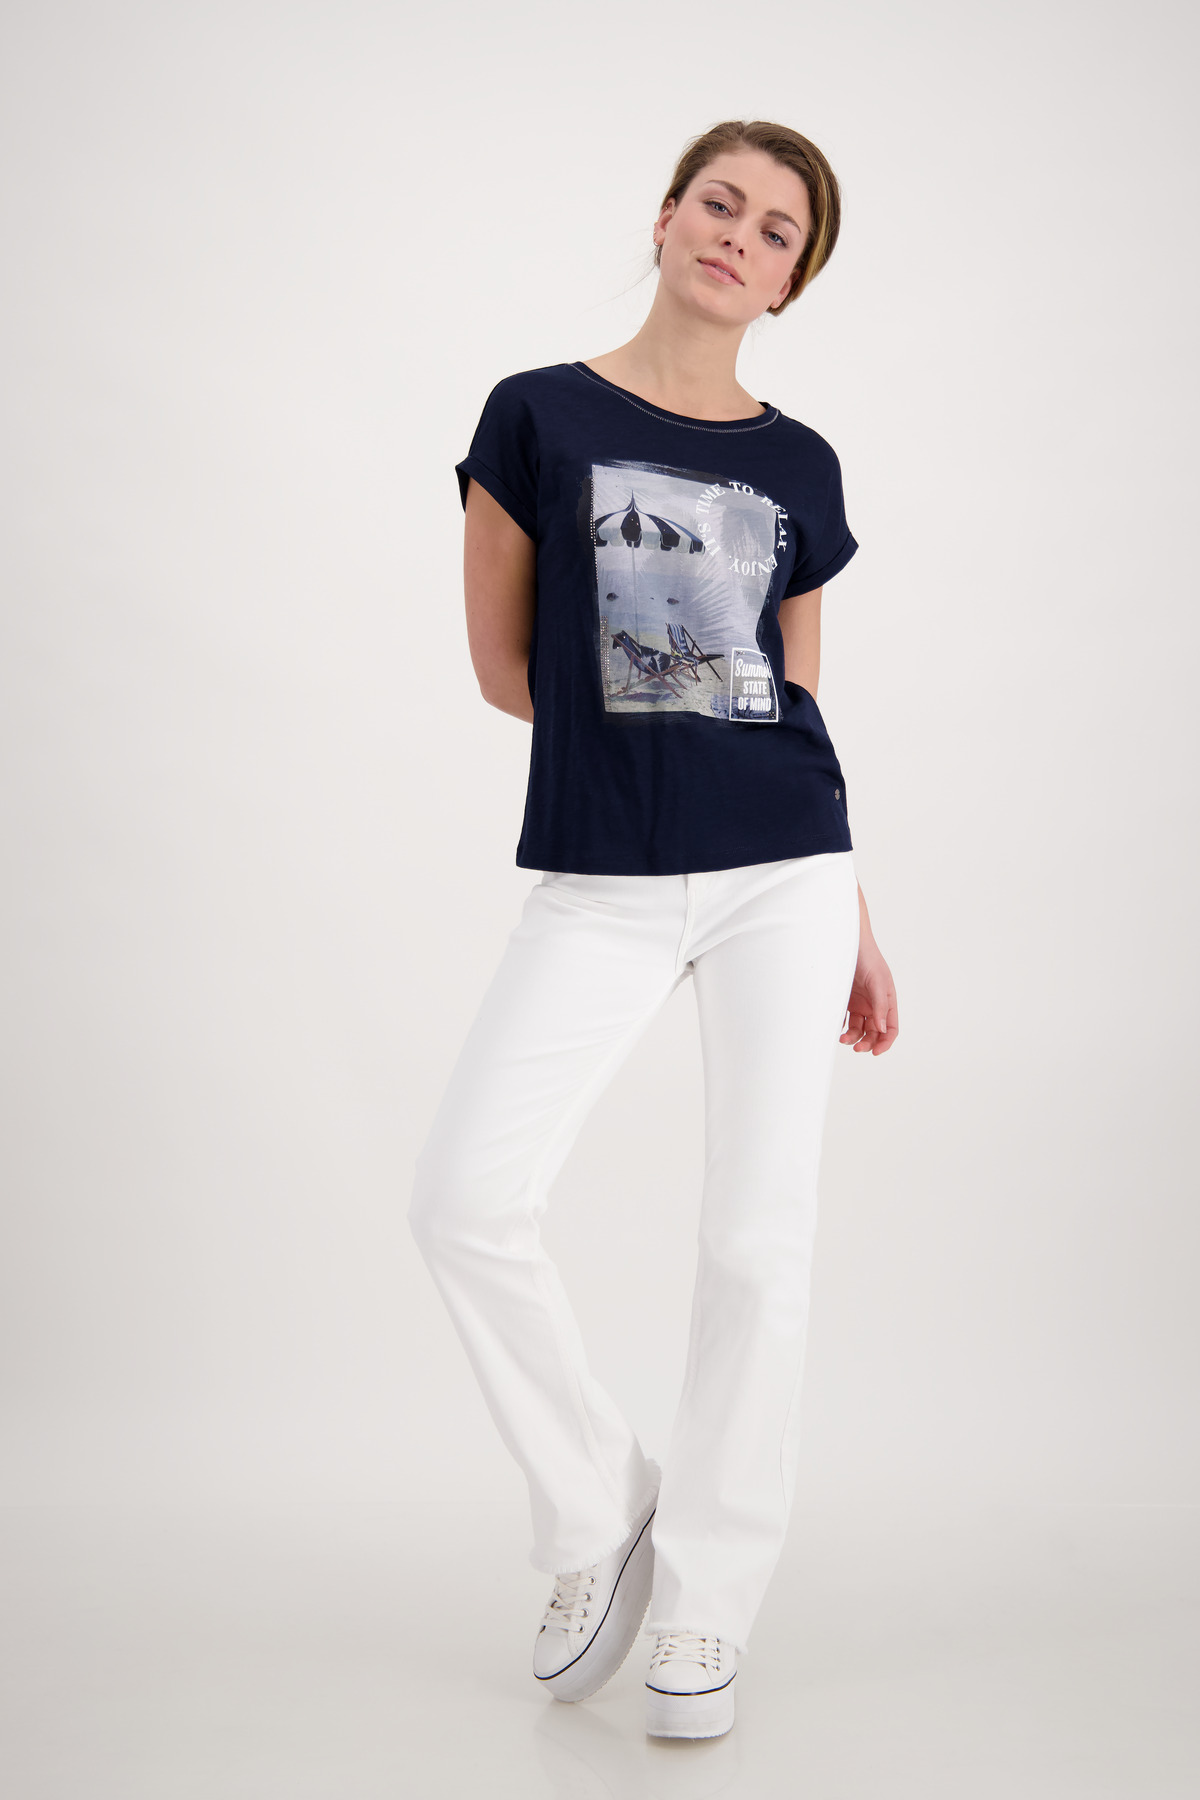 Monari Beach Print Shirt mit 3D Schrift - Horsthemke